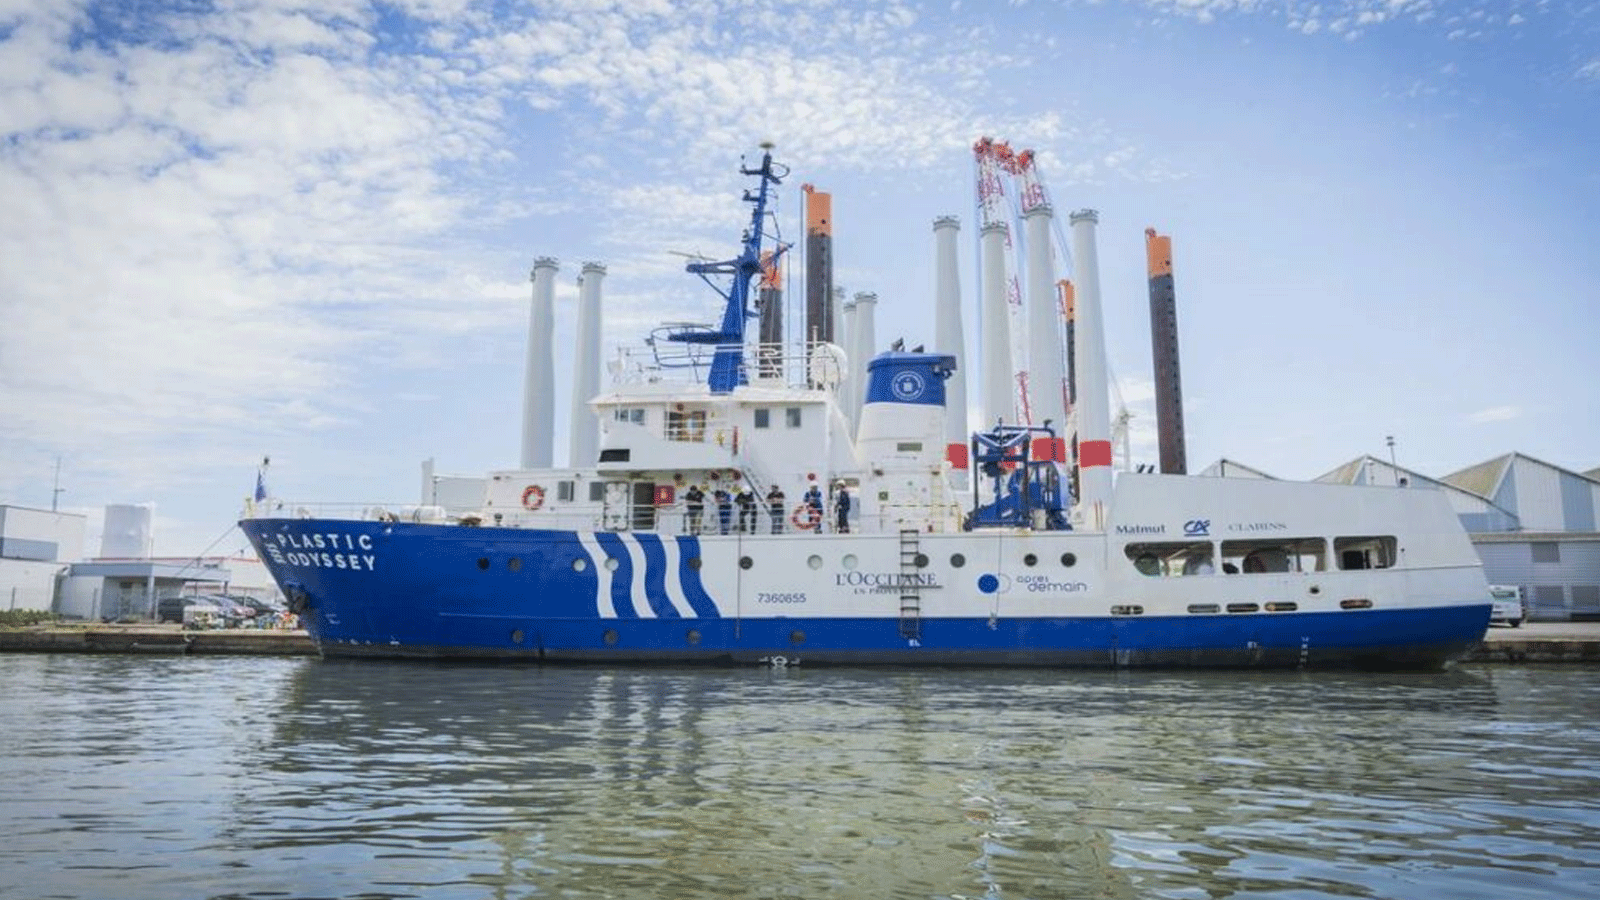  سفينة الأوديسة البلاستيكية جاهزة لإطلاق رحلة استكشافية لمدة ثلاث سنوات تبدأ في مرسيليا في المعركة العالمية ضد التلوث البلاستيكي